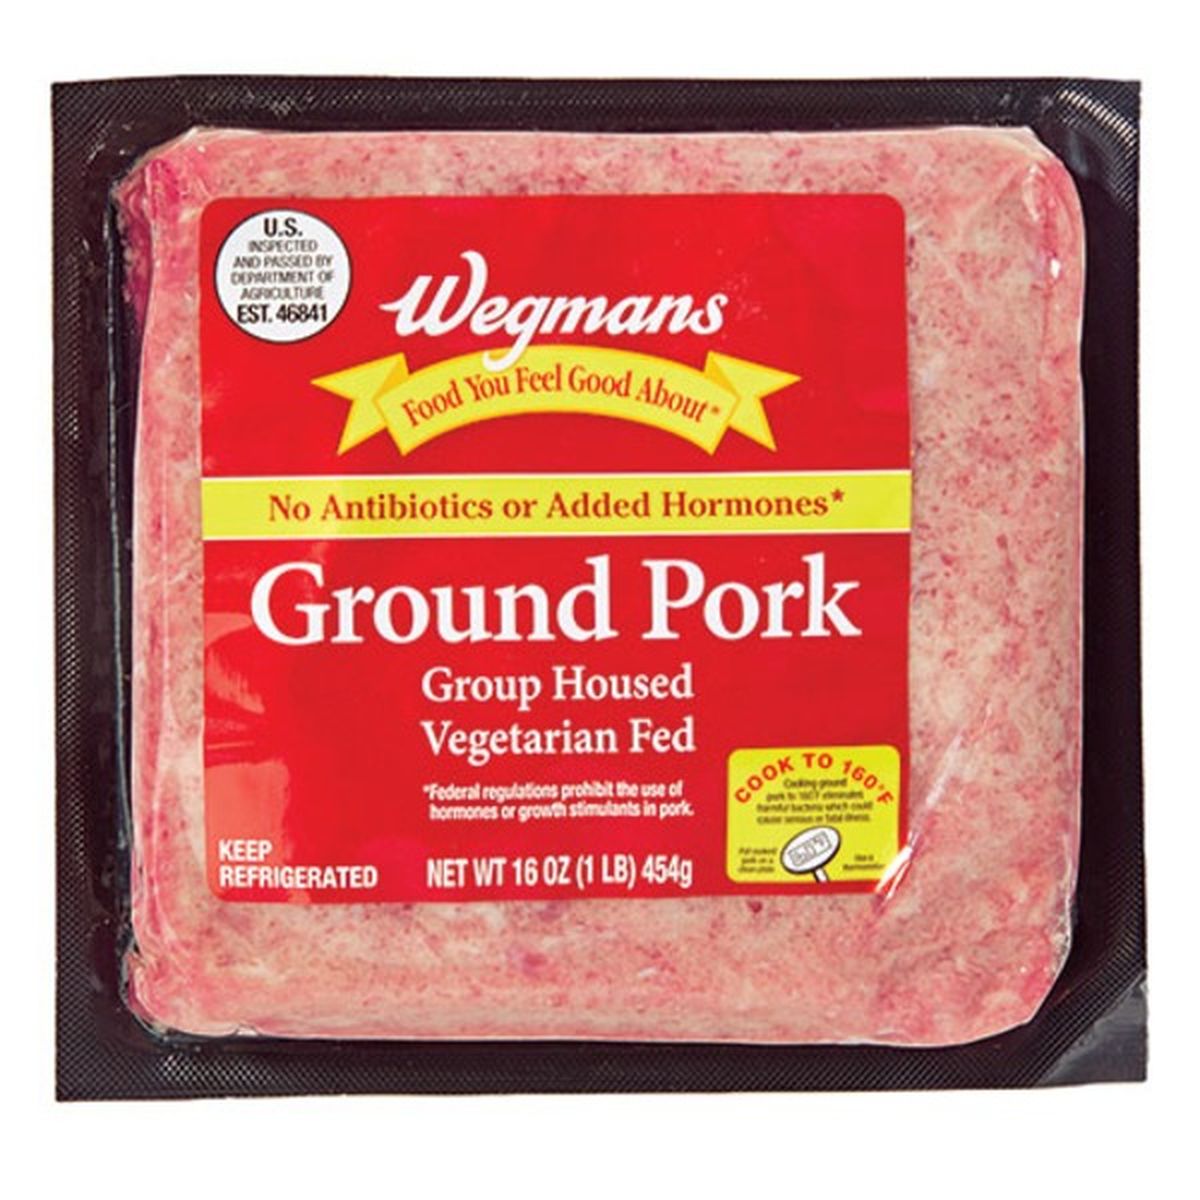 Calories in Wegmans Ground Pork